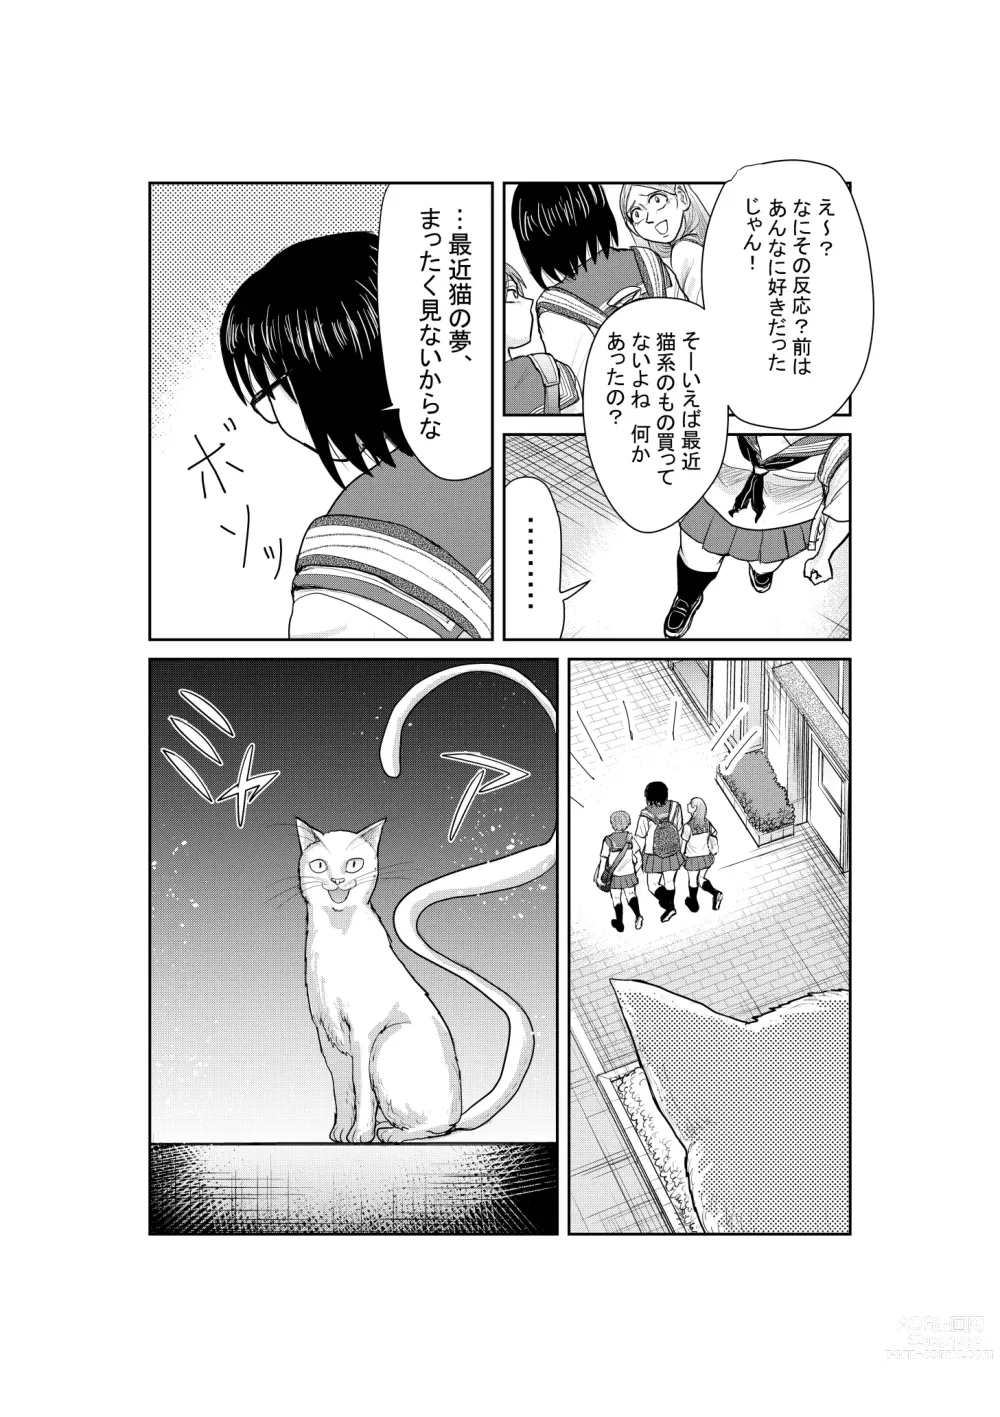 Page 52 of doujinshi Neko